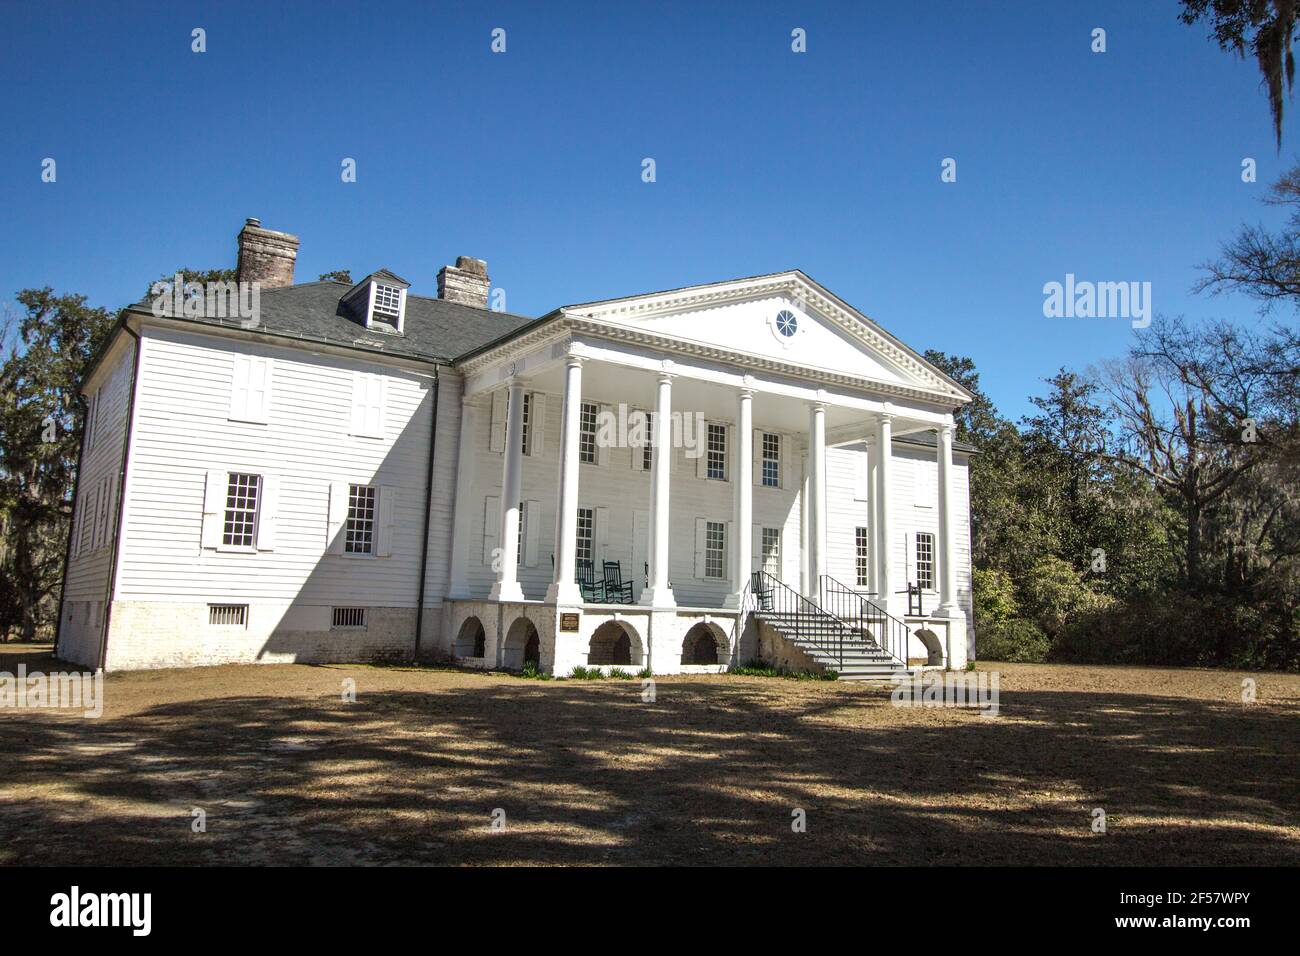 Extérieur de la plantation historique de Hampton. Le manoir de style avant-guerre, apparemment hanté, est la pièce maîtresse d'un parc d'État de Caroline du Sud. Banque D'Images